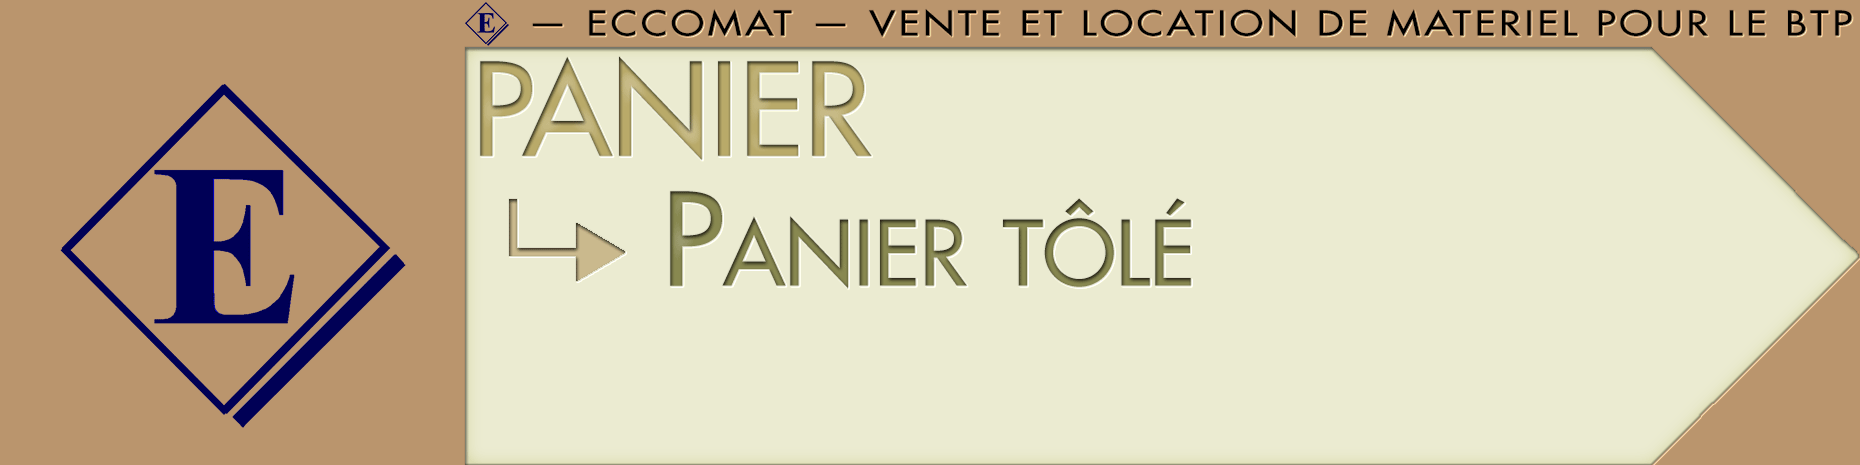 SOUS-DOSSIER-PANIER_TOLE